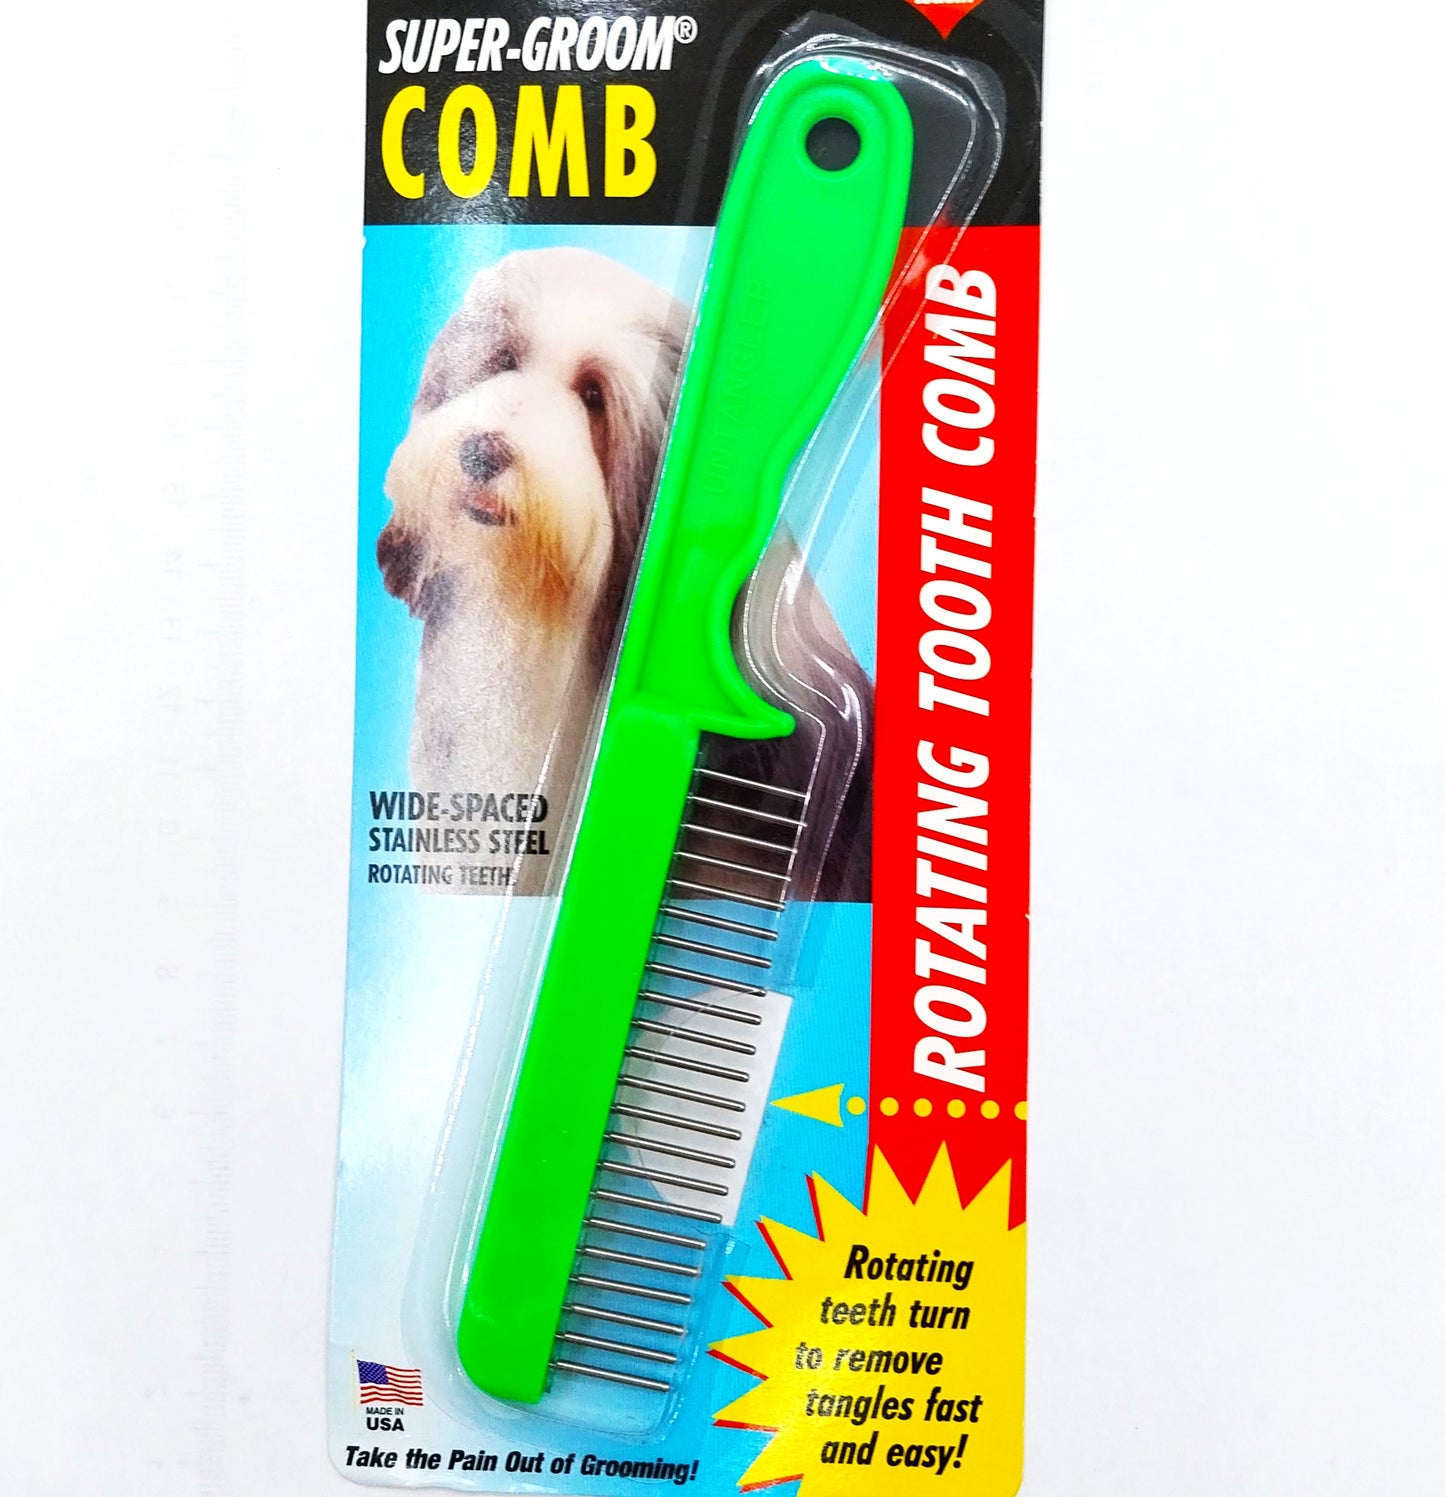 Untangler Super Groom Comb, Haustierkamm mit rotierenden Zähnen - Bestseller für kleine Rassen